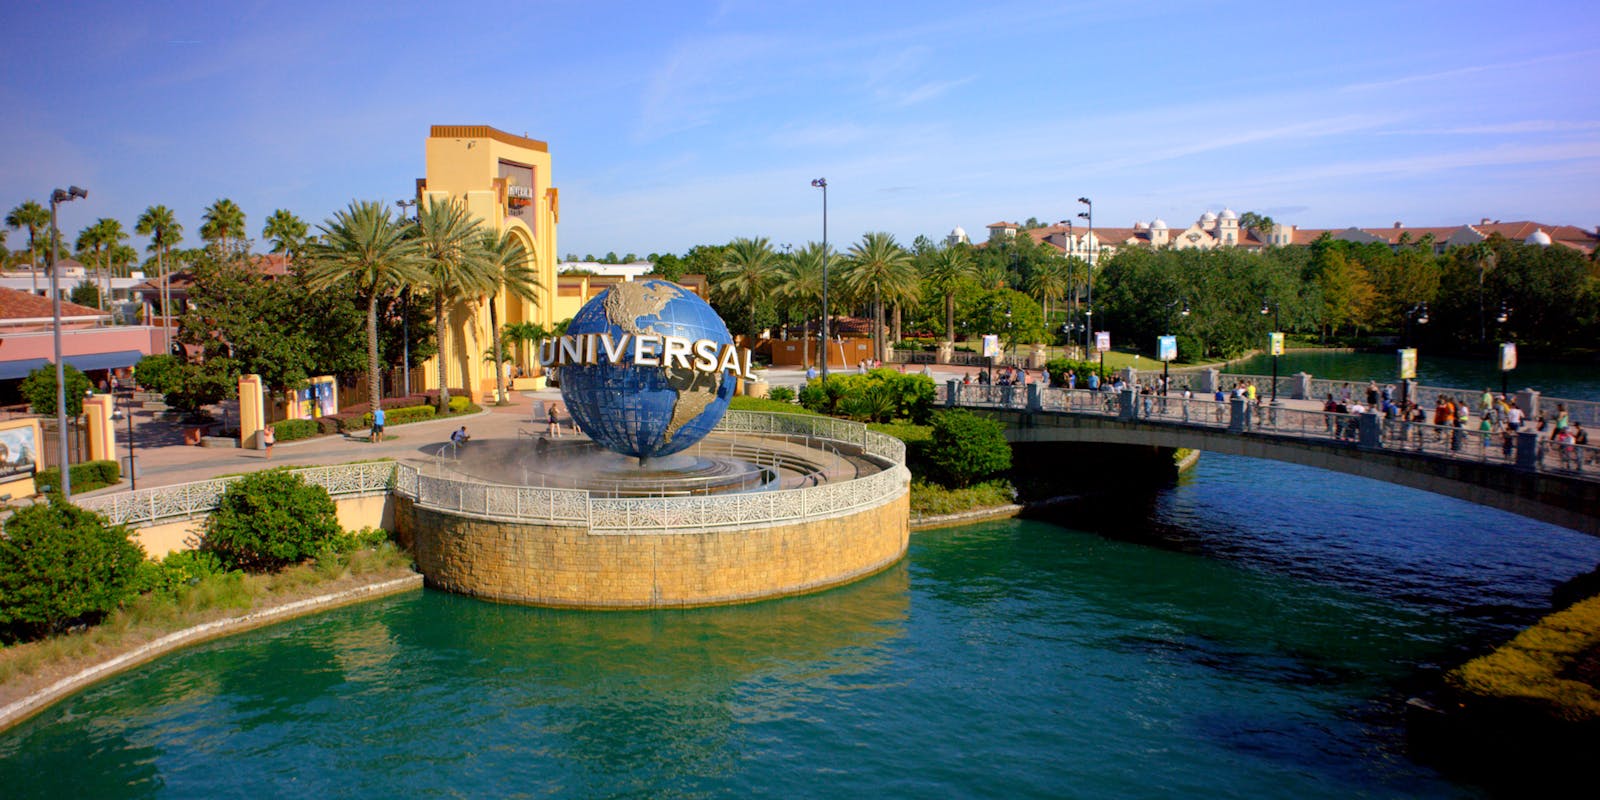 [REPORTAGE] Universal Studios Florida : une visite déboussolante